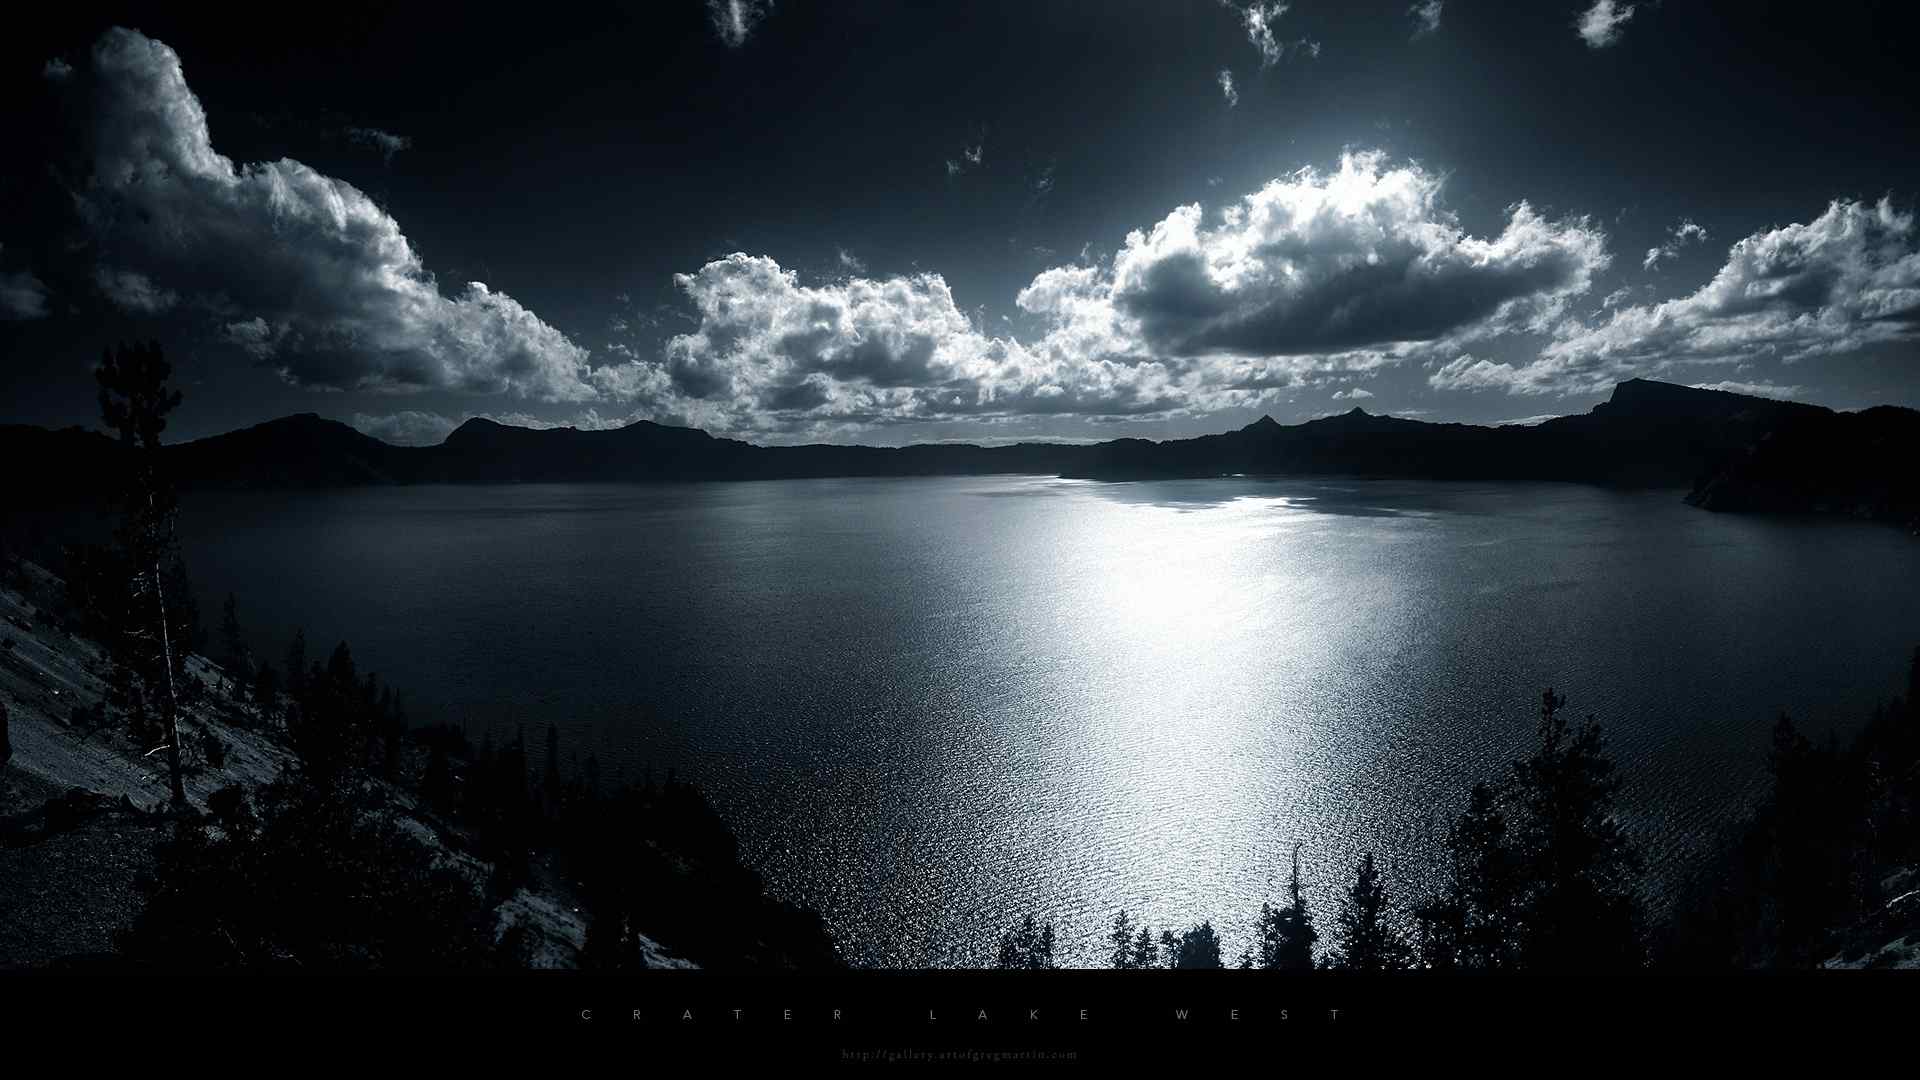 震撼视觉的美国俄勒冈火山湖风景桌面壁纸 第九辑